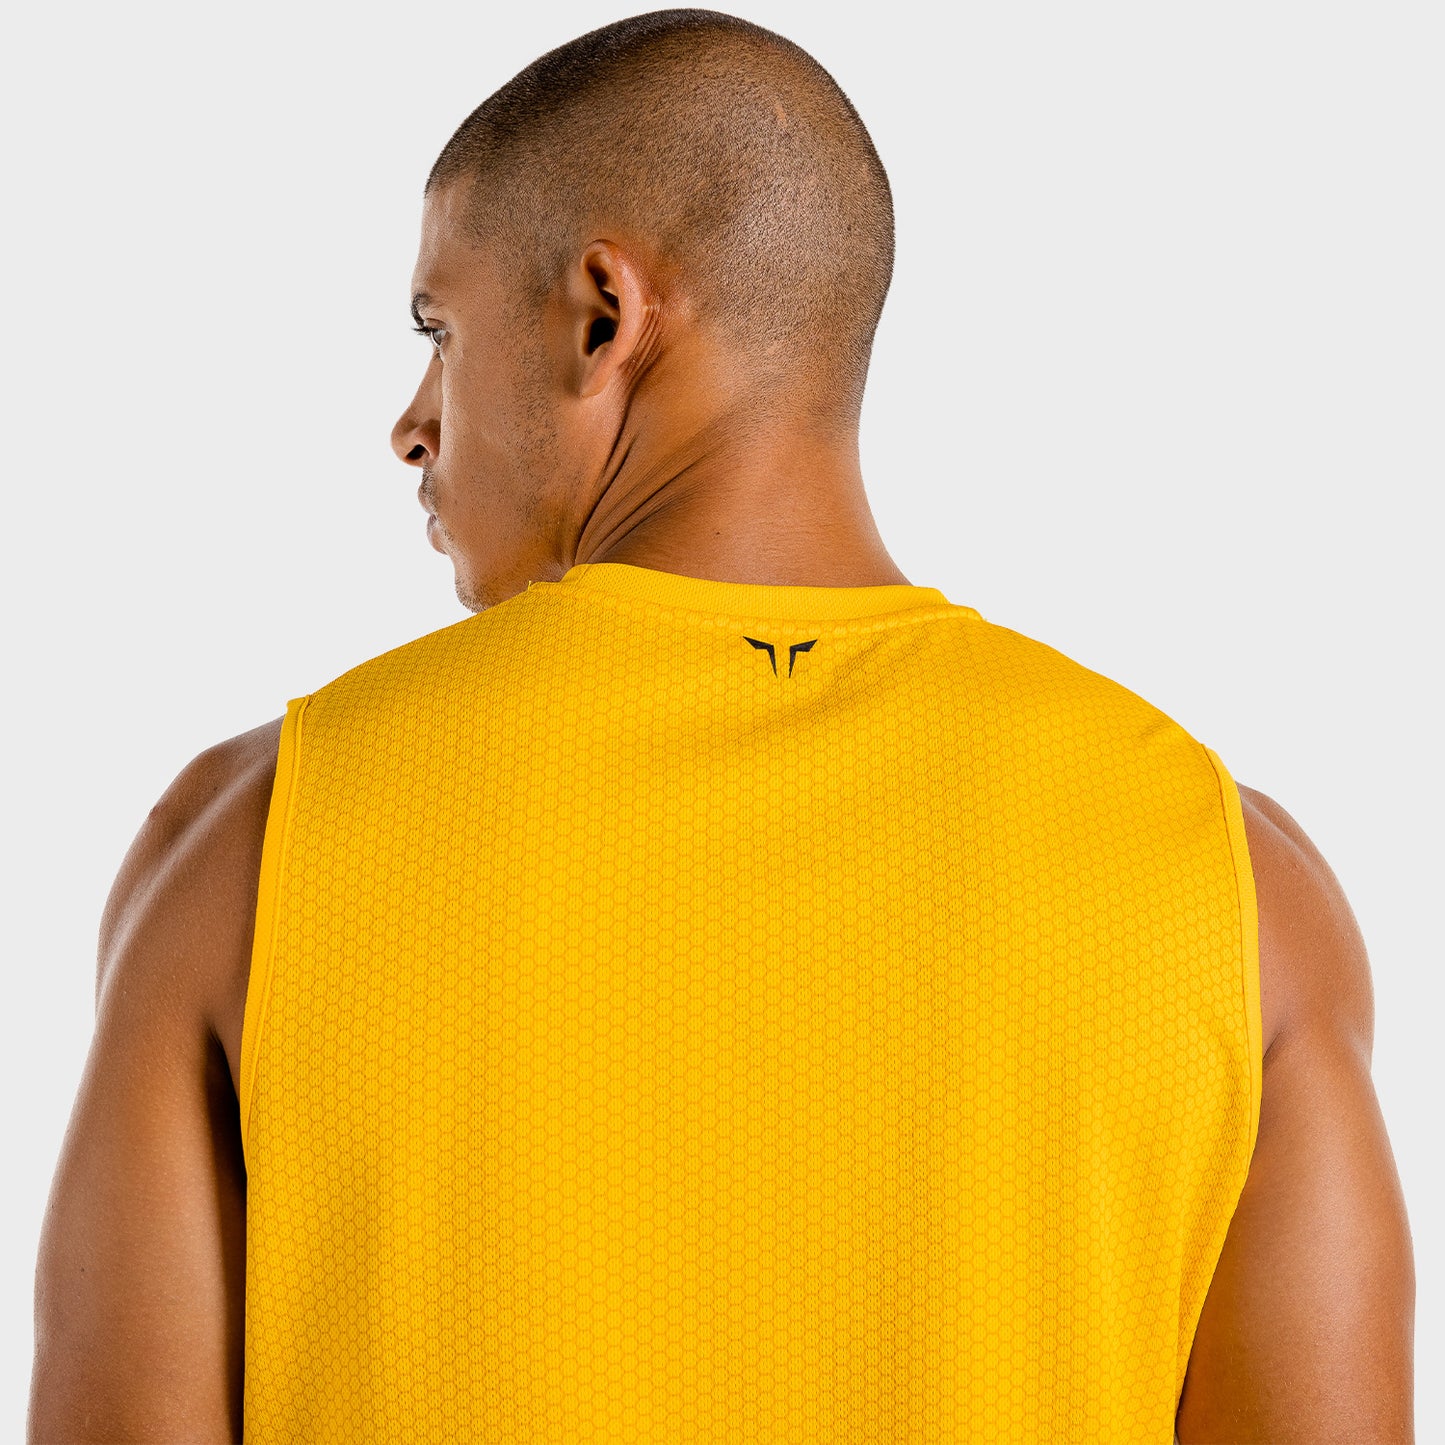 squatwolf-workout-tank-tops-for-men-batman-gym-tank-yellow-gym-wear